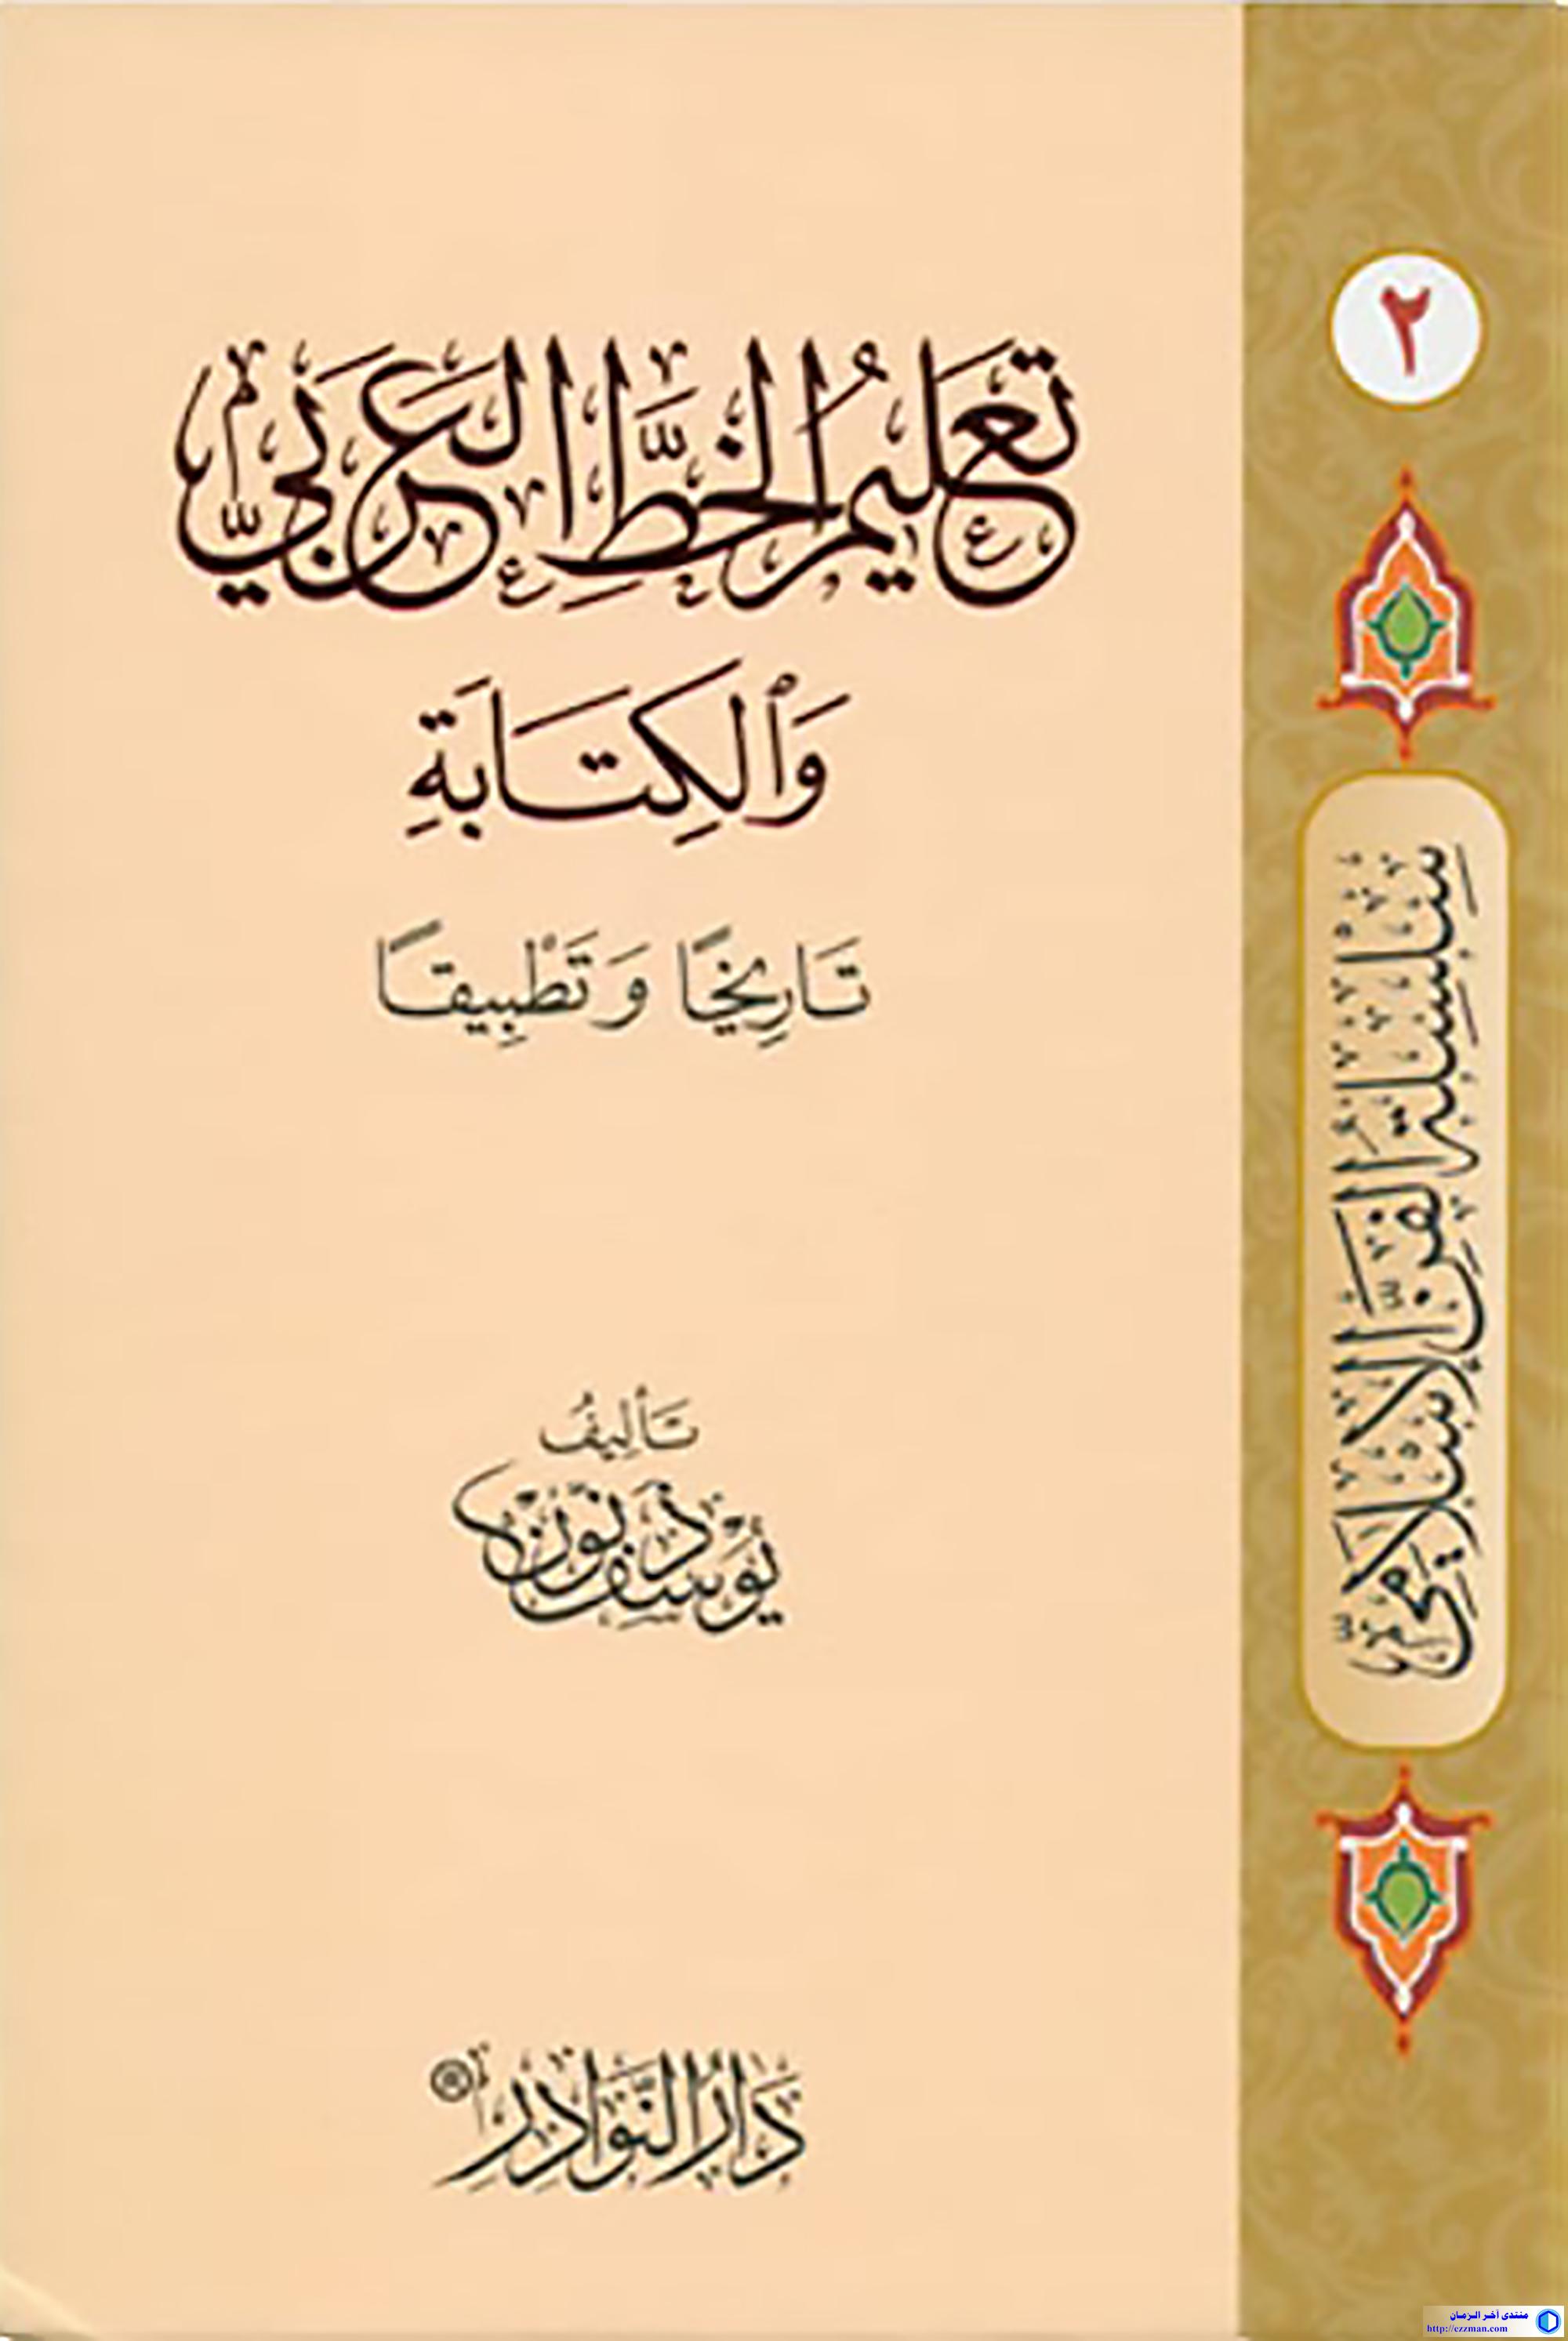 تعليم الخط العربي والكتابة تاريخا